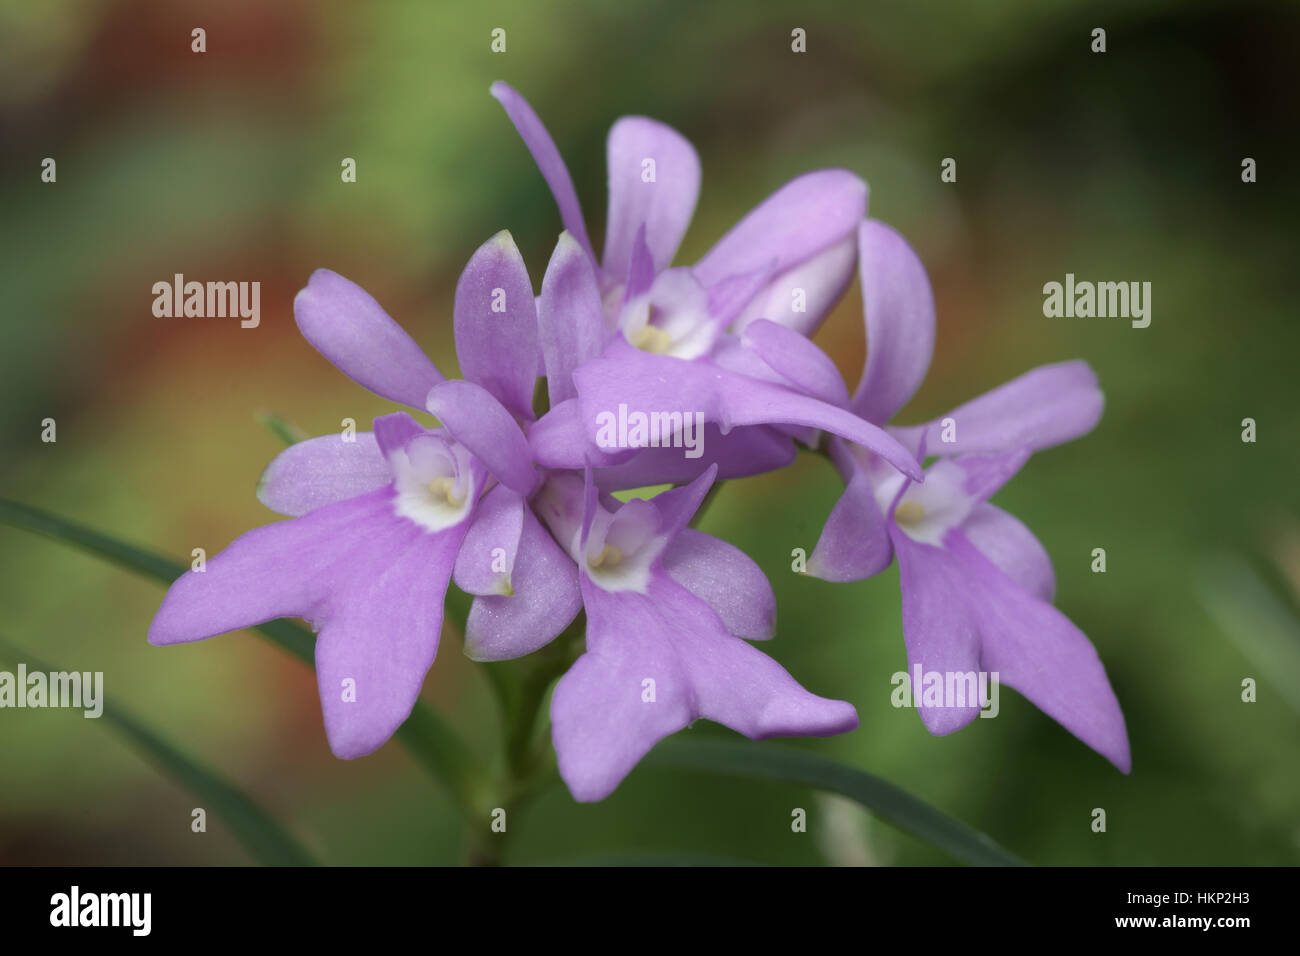 Epidendrum centropetalum Stock Photo